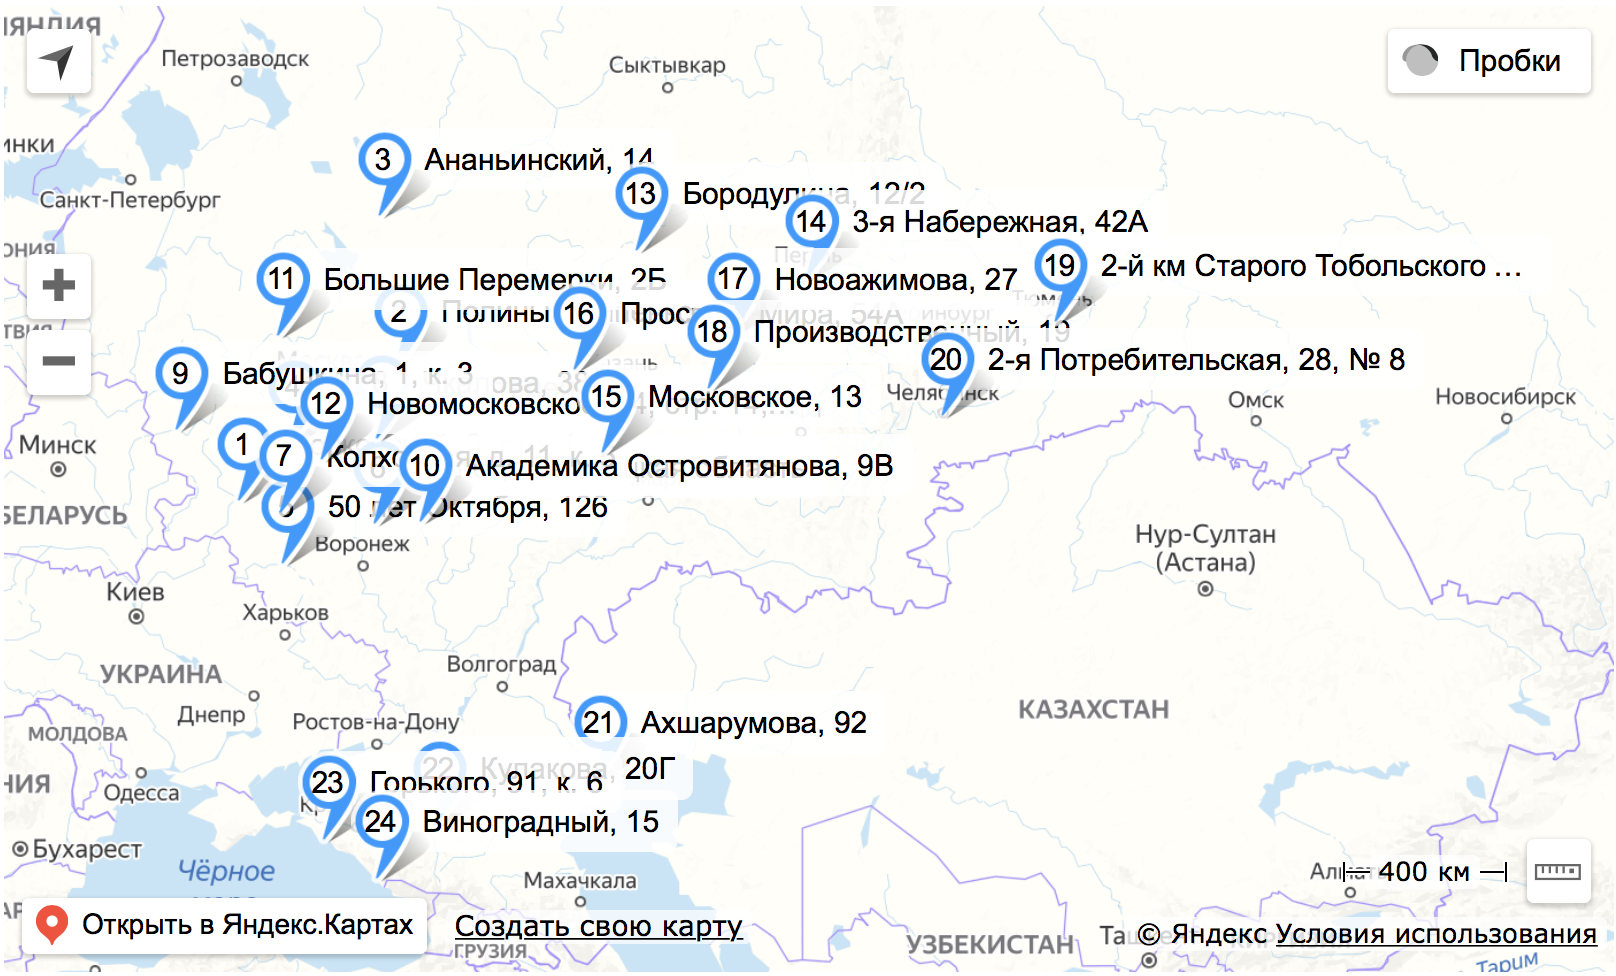 Яндекс.Маркет открывает новые сортировочные центры в 24 городах